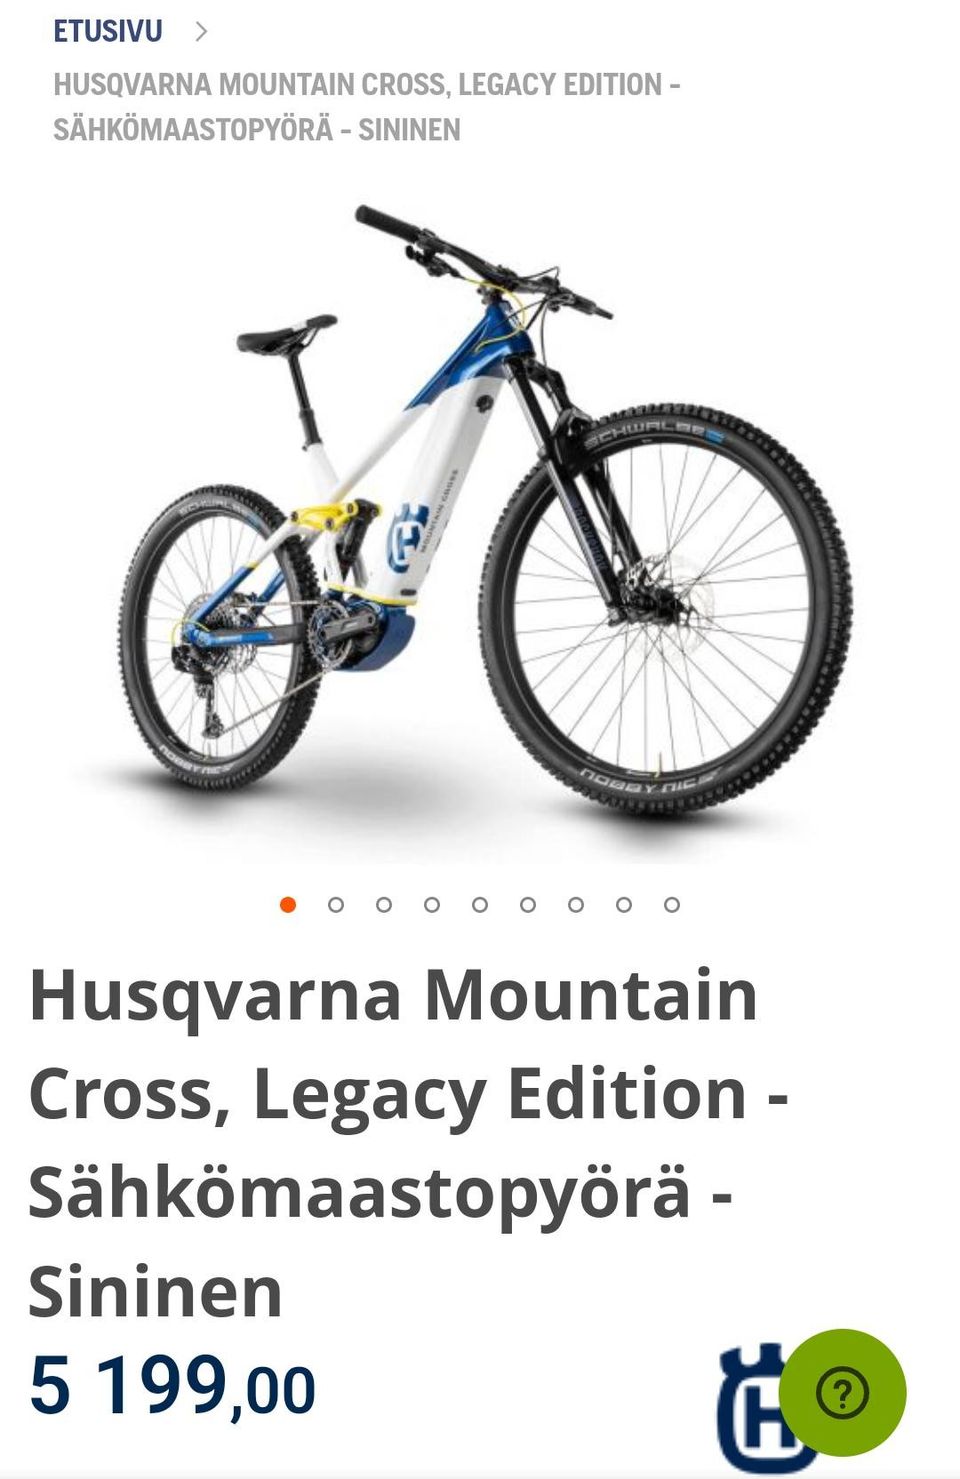 n.400km ajettu Husqvarna Mountain Cross, Legacy Edition Sähkömaastopyörä